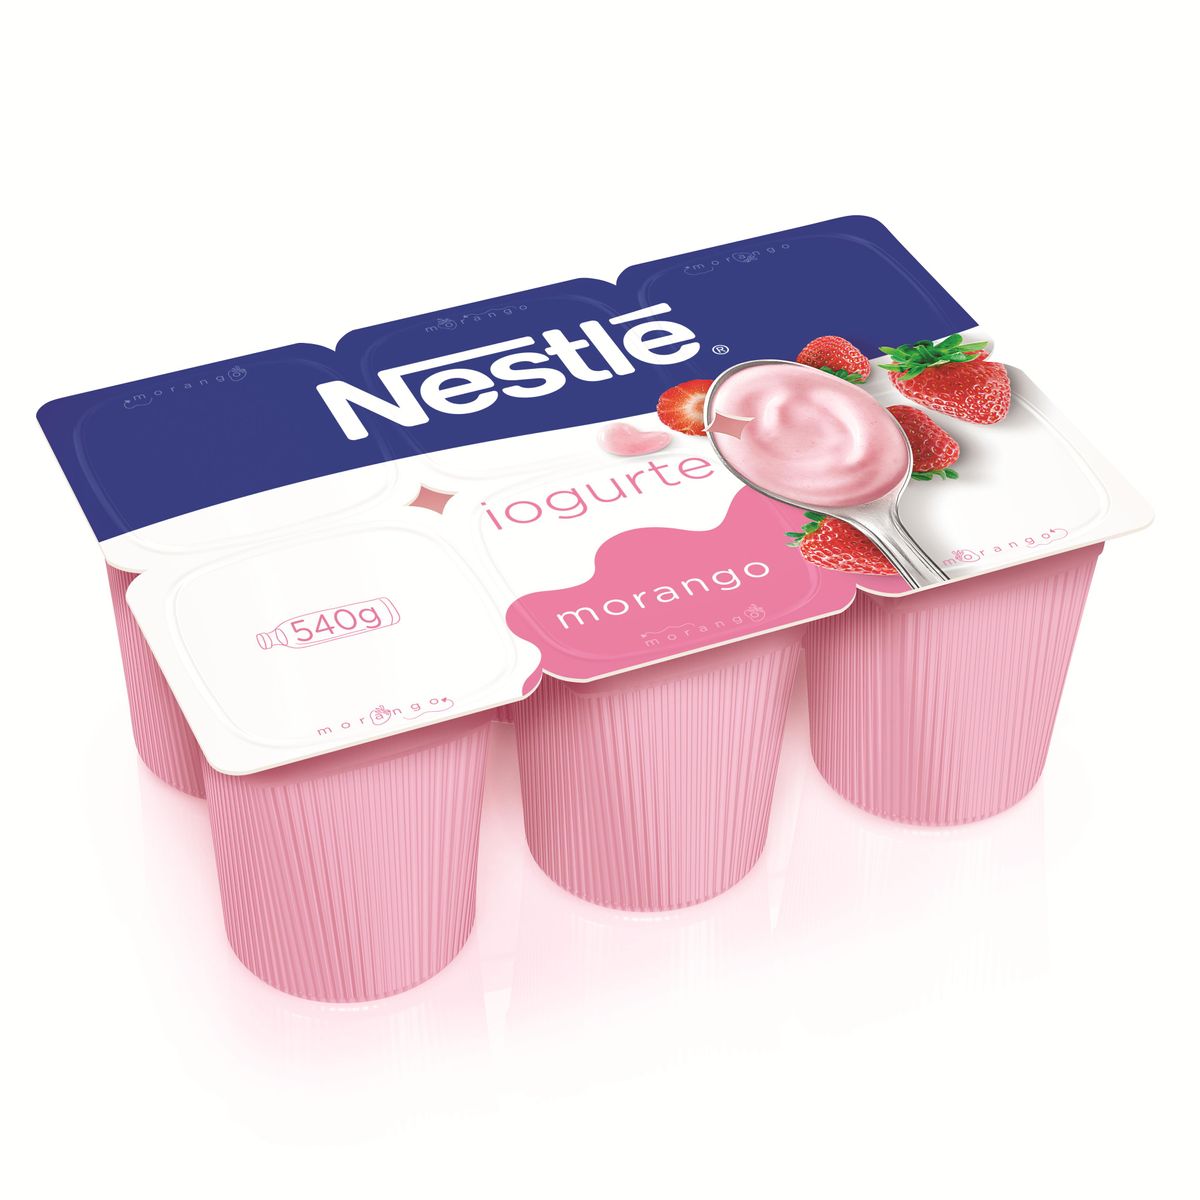 Iogurte Nestlé Polpa Morango 540g